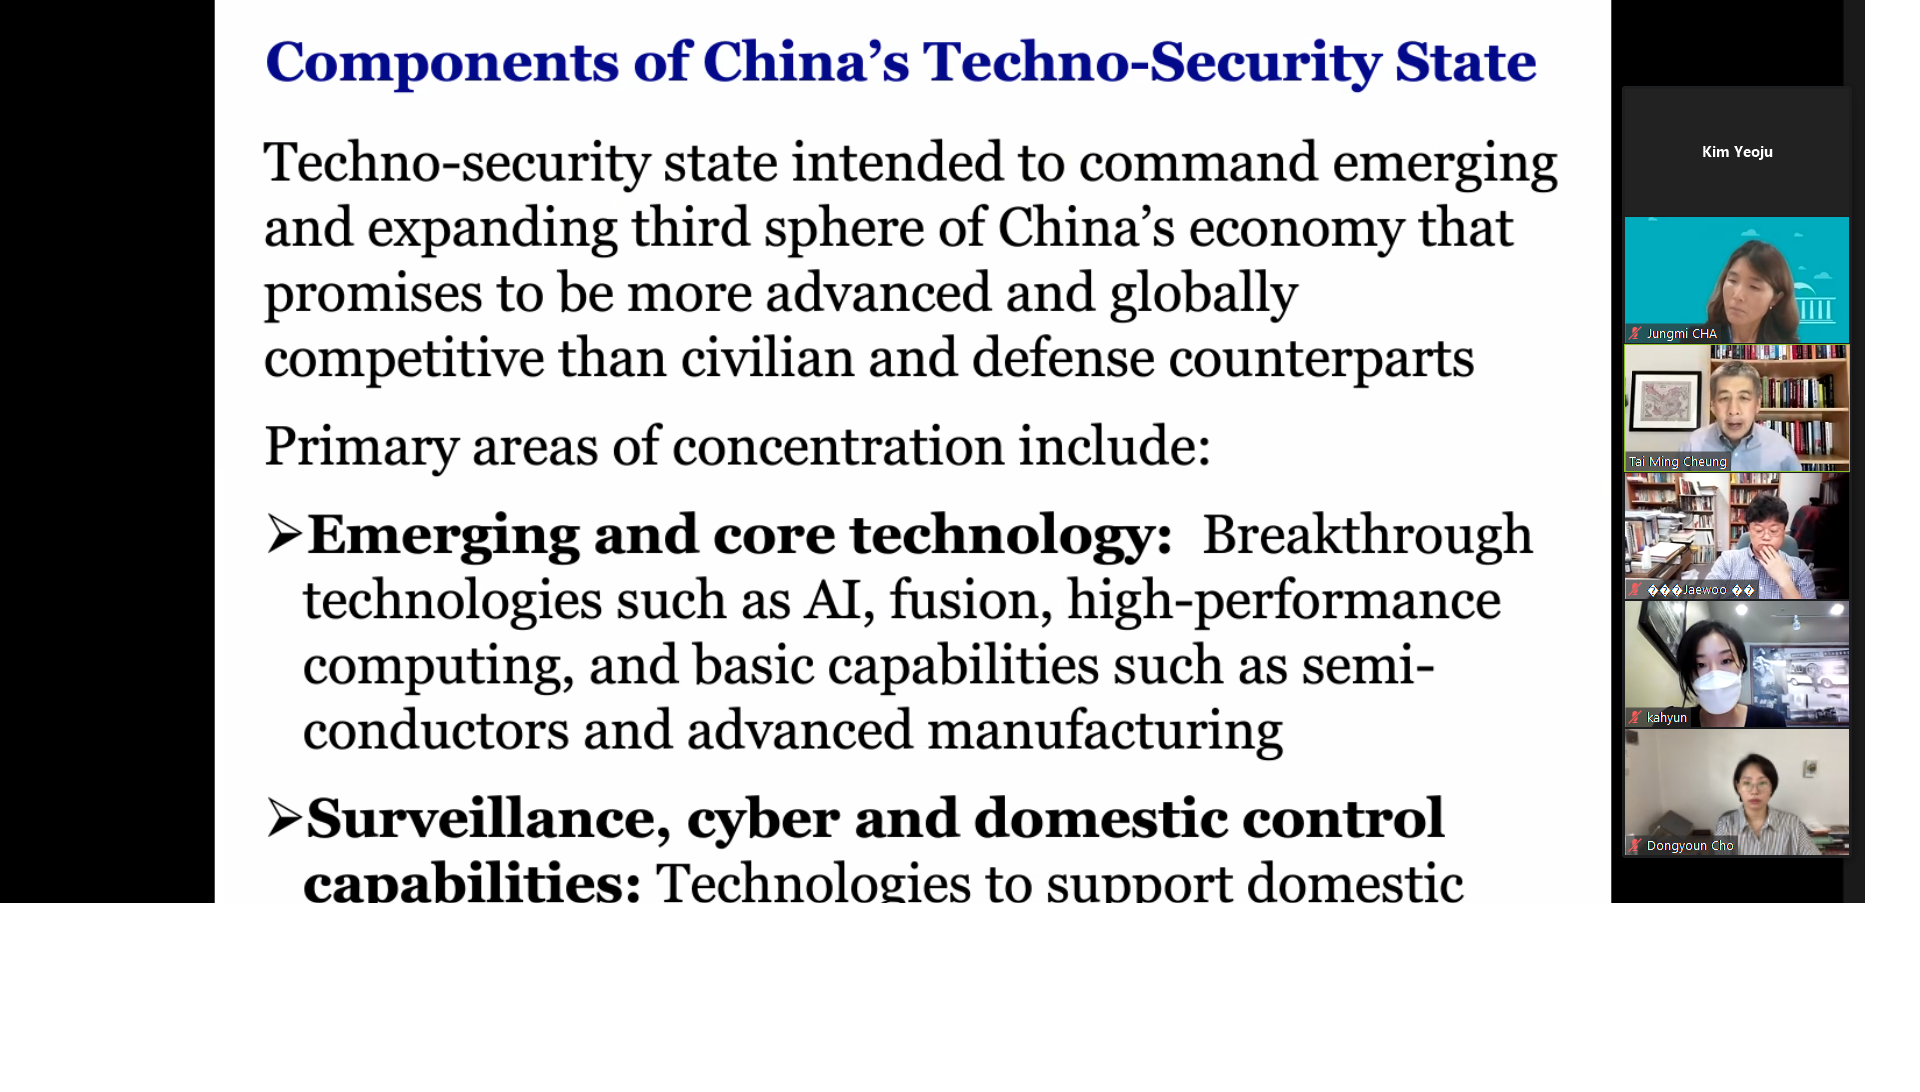 [07.23] 과학기술과 미래전쟁 : NAFI 웨비나 시리즈 1(시진핑 시대 기술-안보국가의 부상과 국제전략적 함의)2